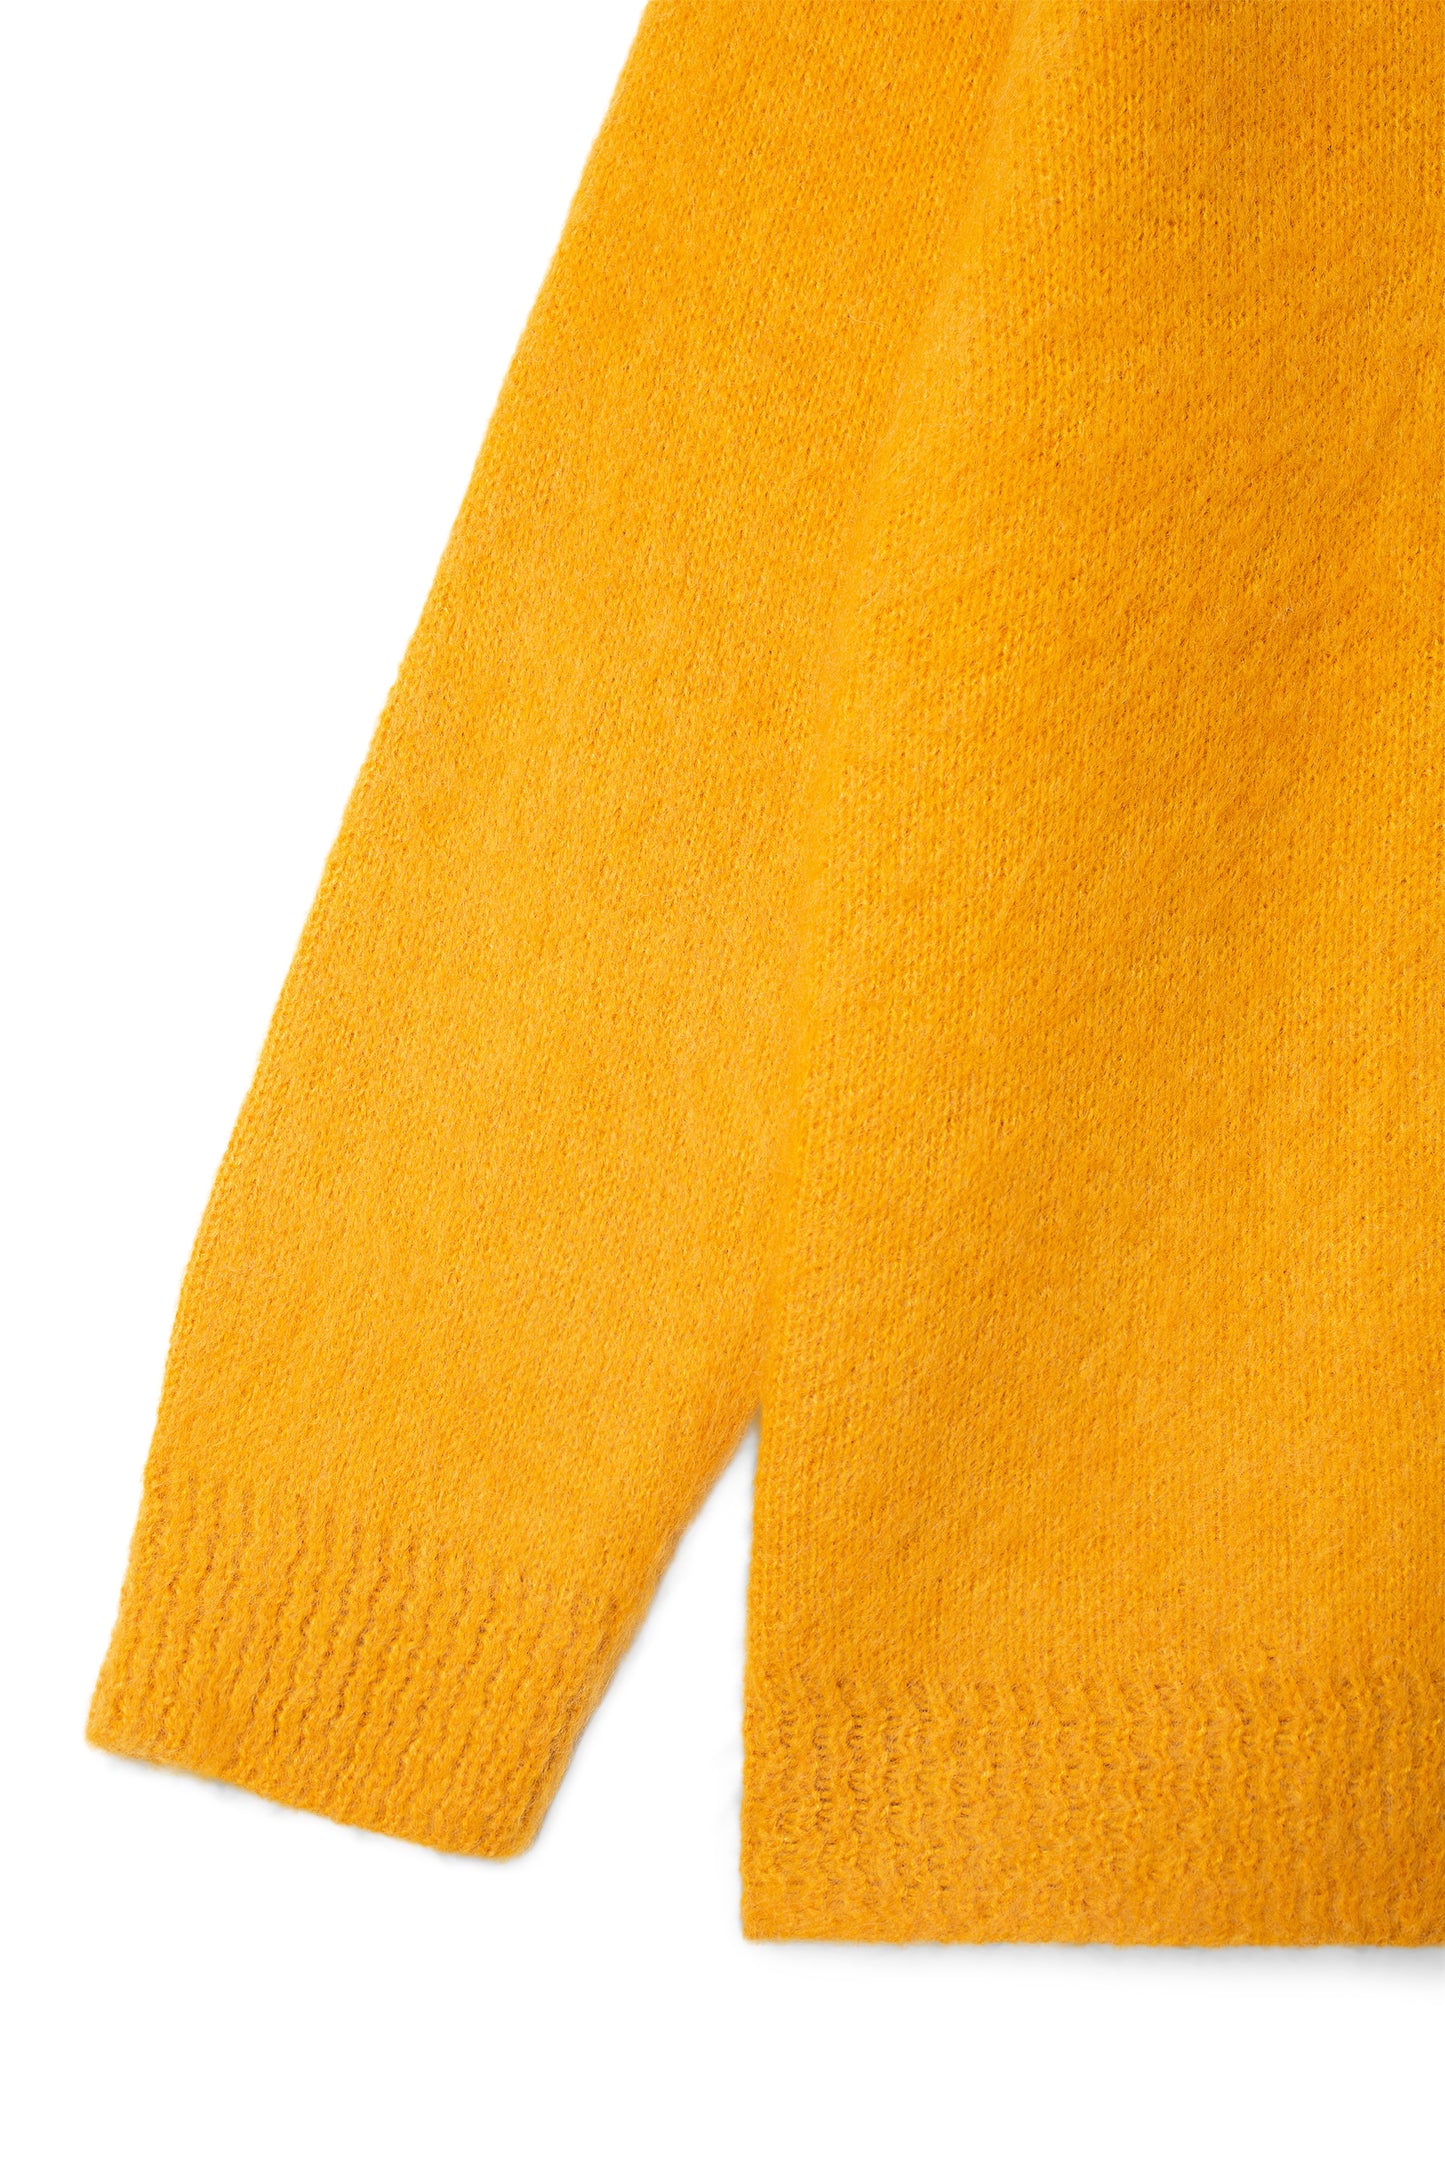 Aberdeen Kurtigan (Yellow)